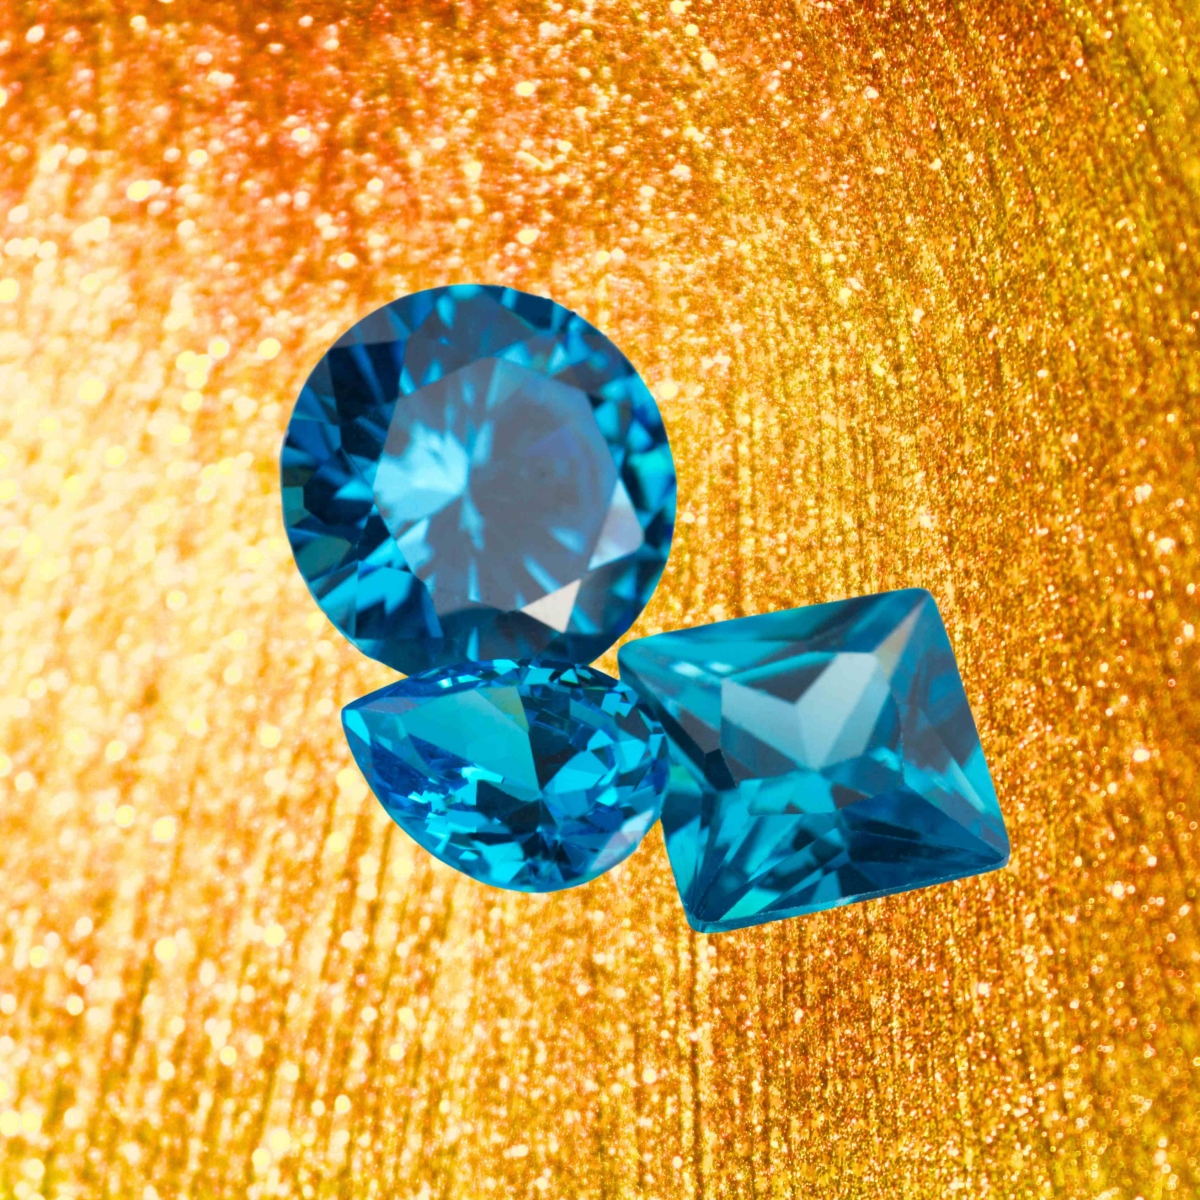 Три разных типа голубых драгоценных камней Бирмы